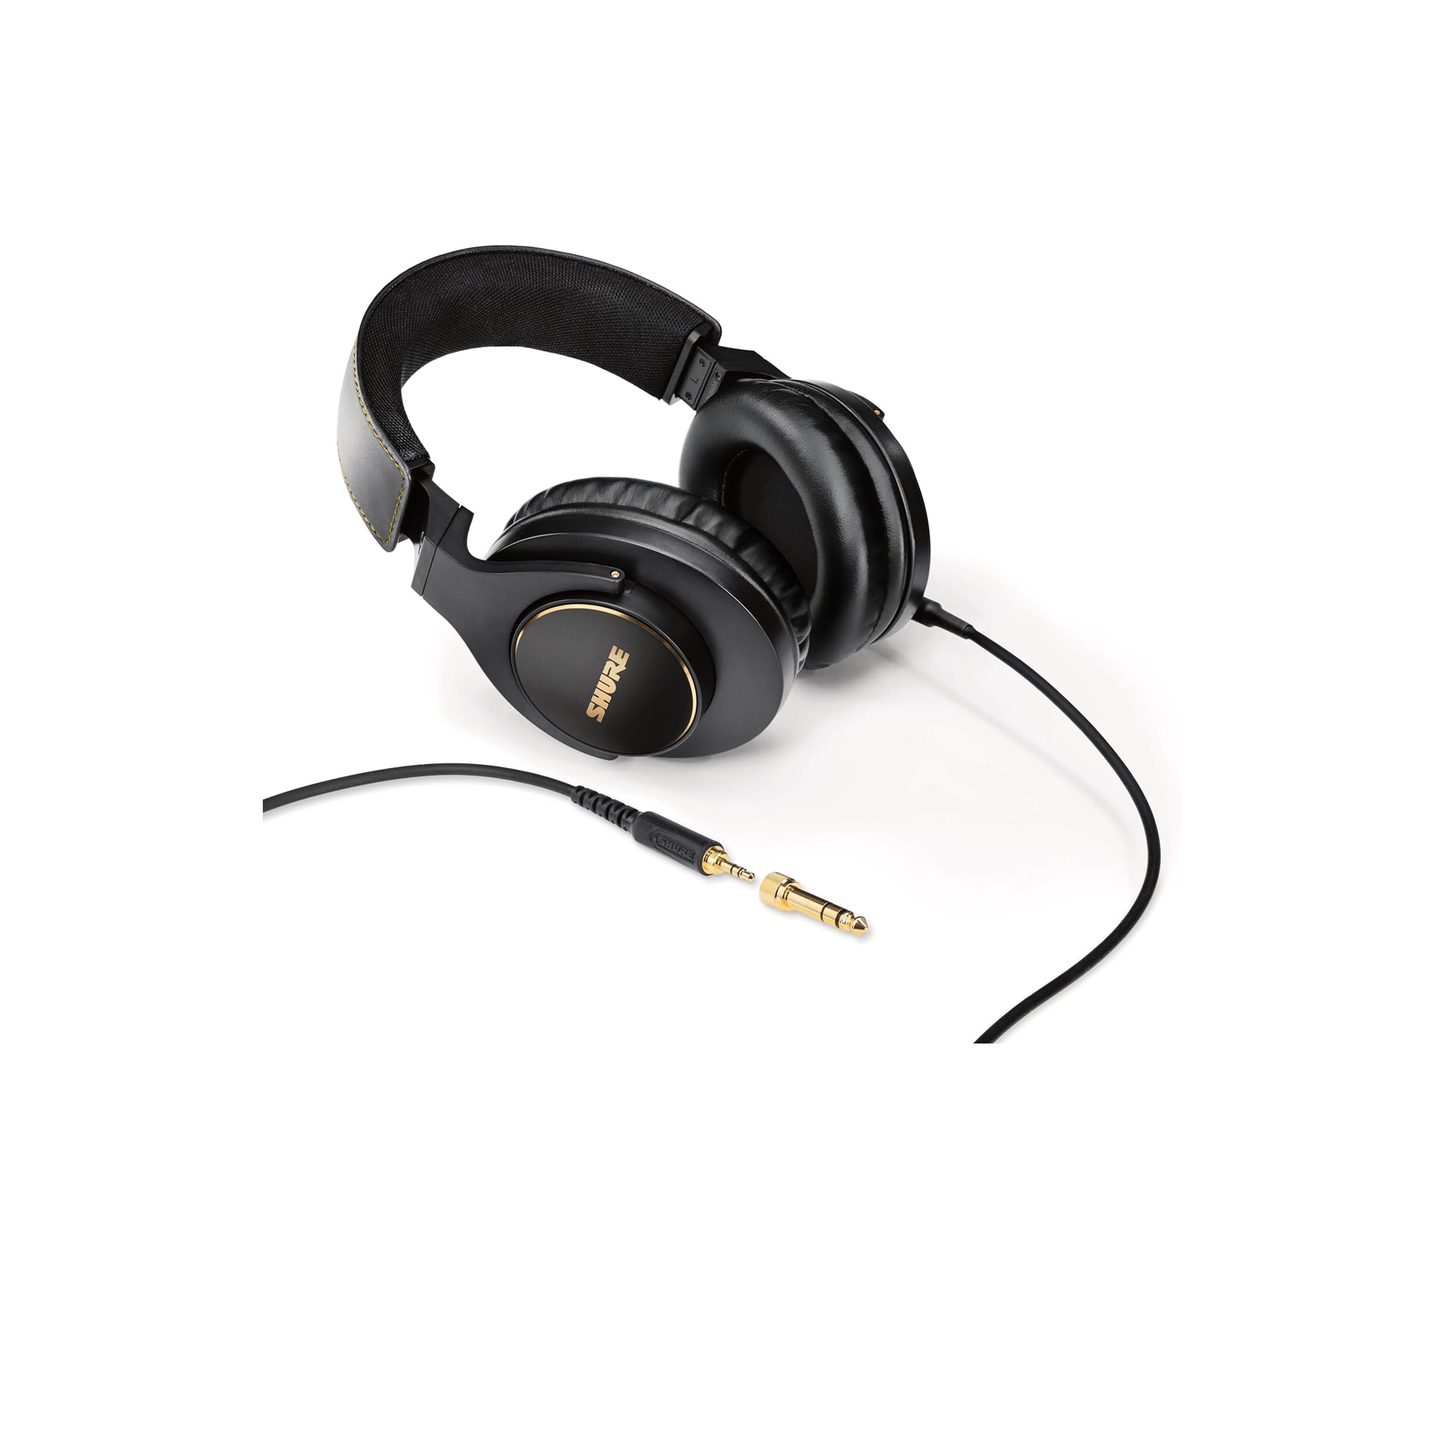 سماعات رأس سلكية فوق الأذن من Shure SRH840A للاستماع والمراقبة الحرجة، سماعة رأس احترافية، استجابة تردد مخصصة، صوت مفصل فائق، تصميم قابل للتعديل والطي - إصدار 2022 